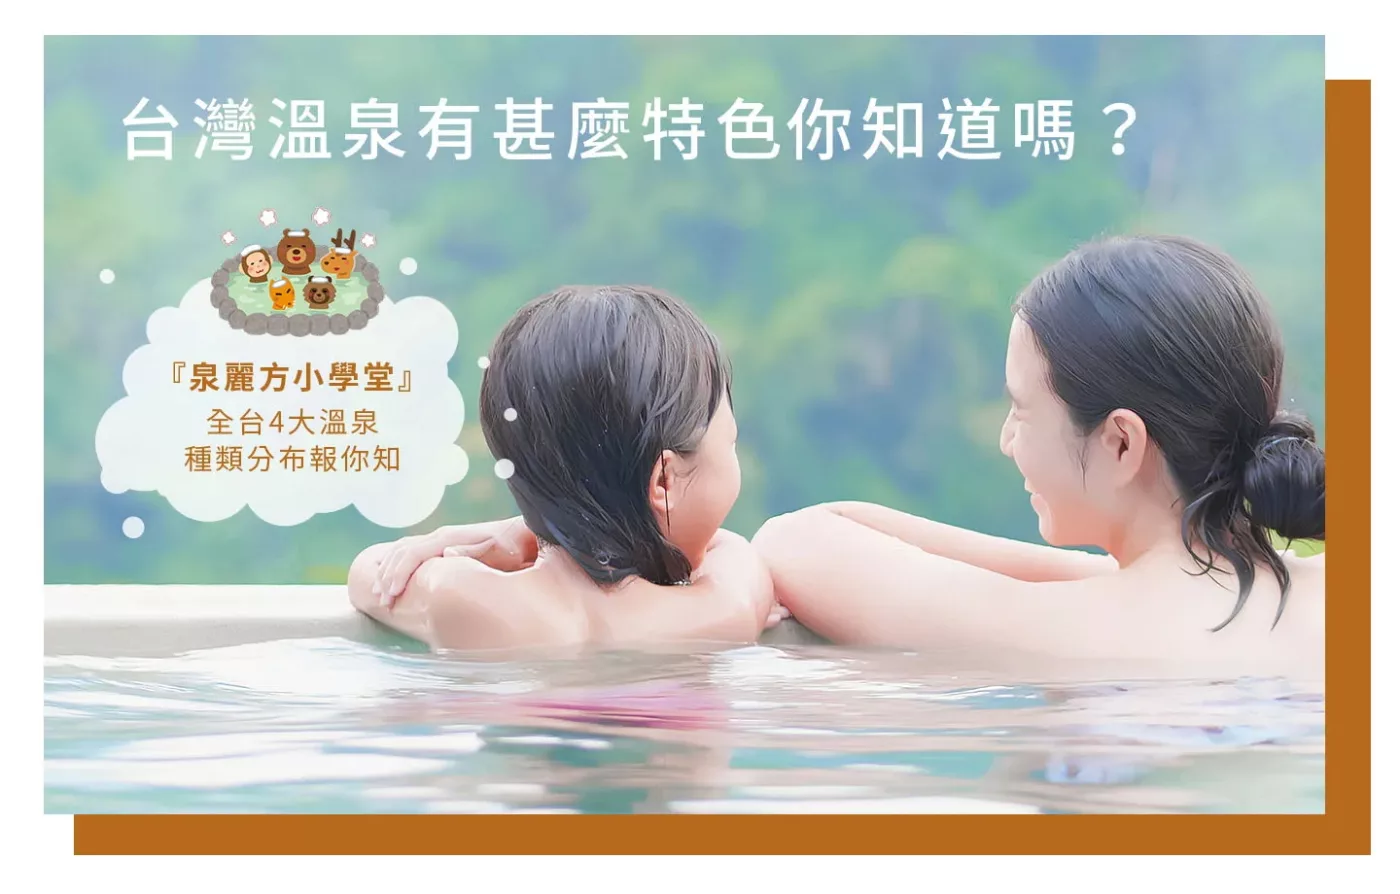 台灣溫泉有甚麼特色你知道嗎？全台3大溫泉種類分布報你知